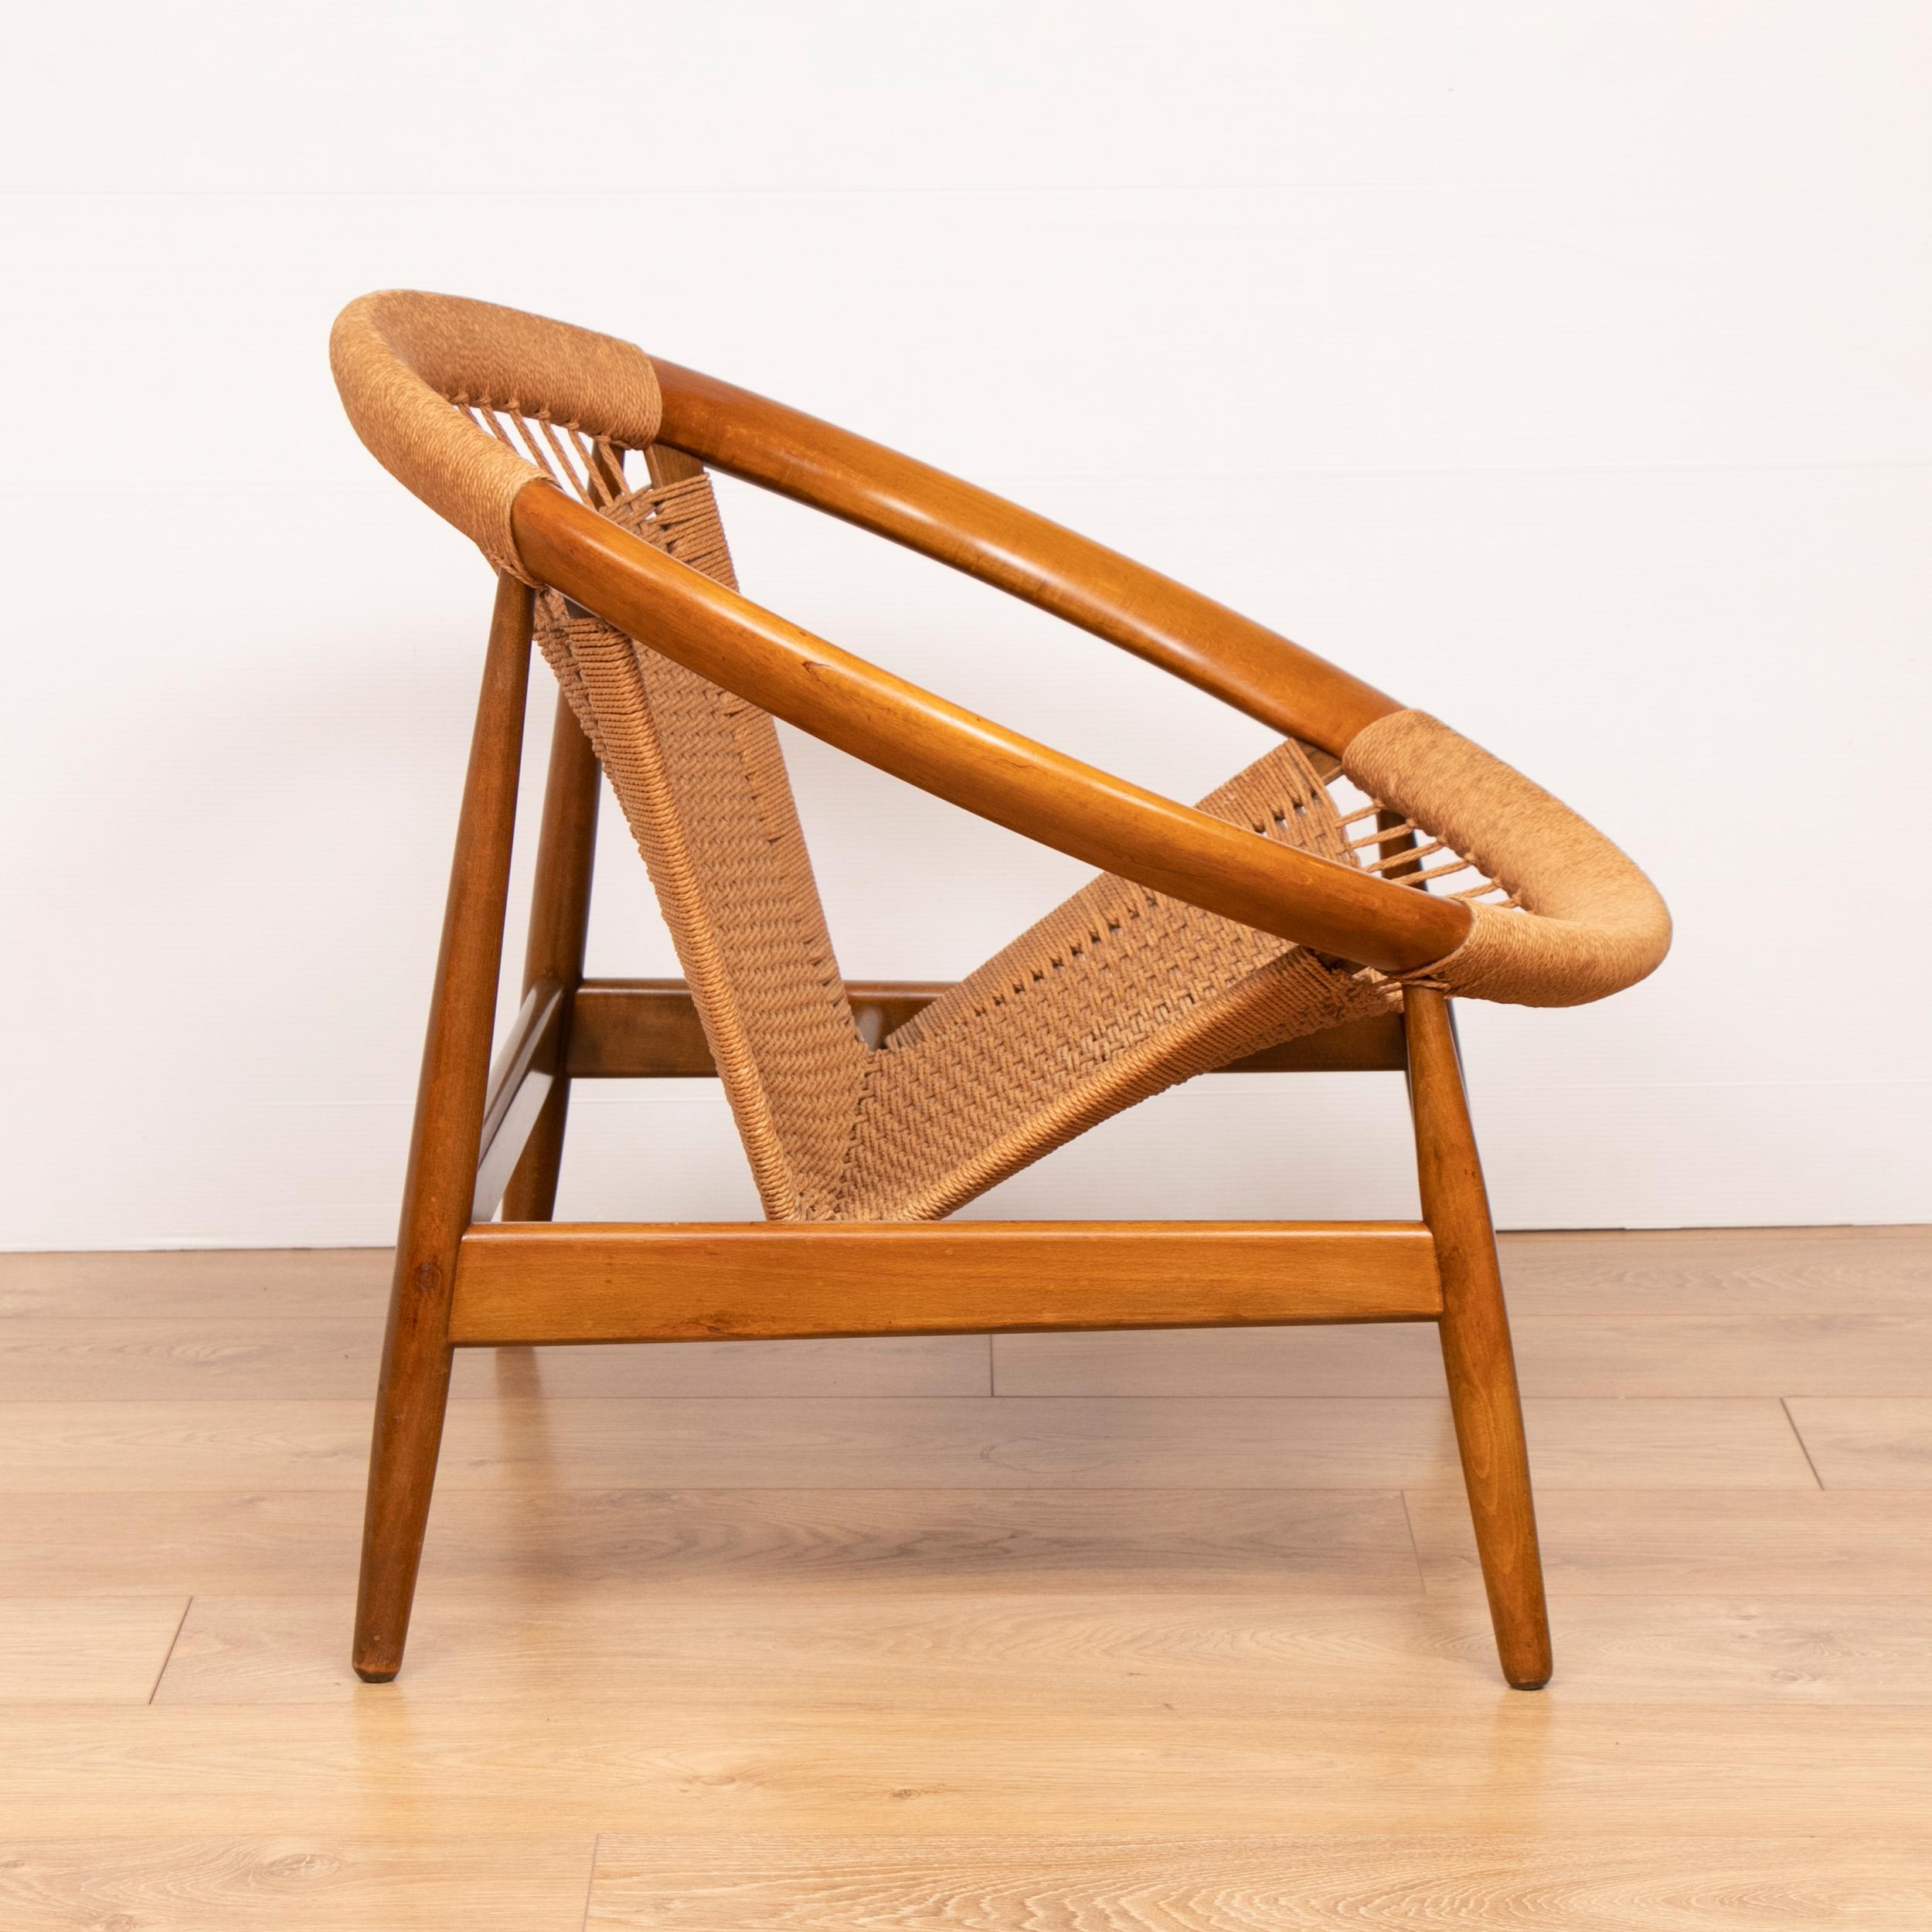 Mid-Century Modern Danish Mcentury Illum Wikkelso Ringstol Teak and Woven Cord model 23 Chair For Sale